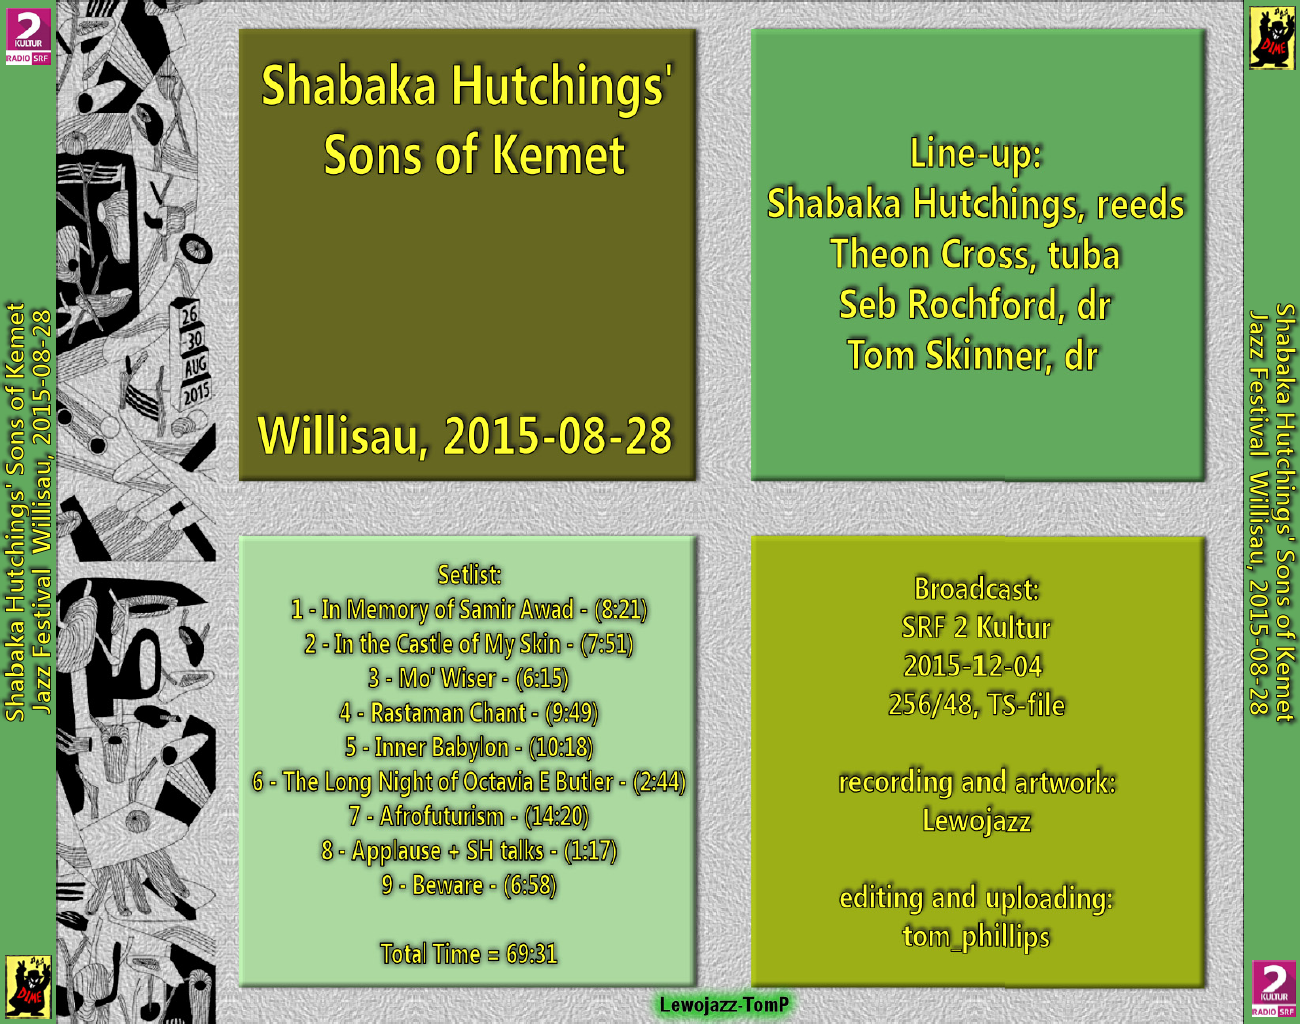 ShabakaHutchingsSonsOfKemet2015-08-28WillisauJazzFestivalSwitzerland (5).png